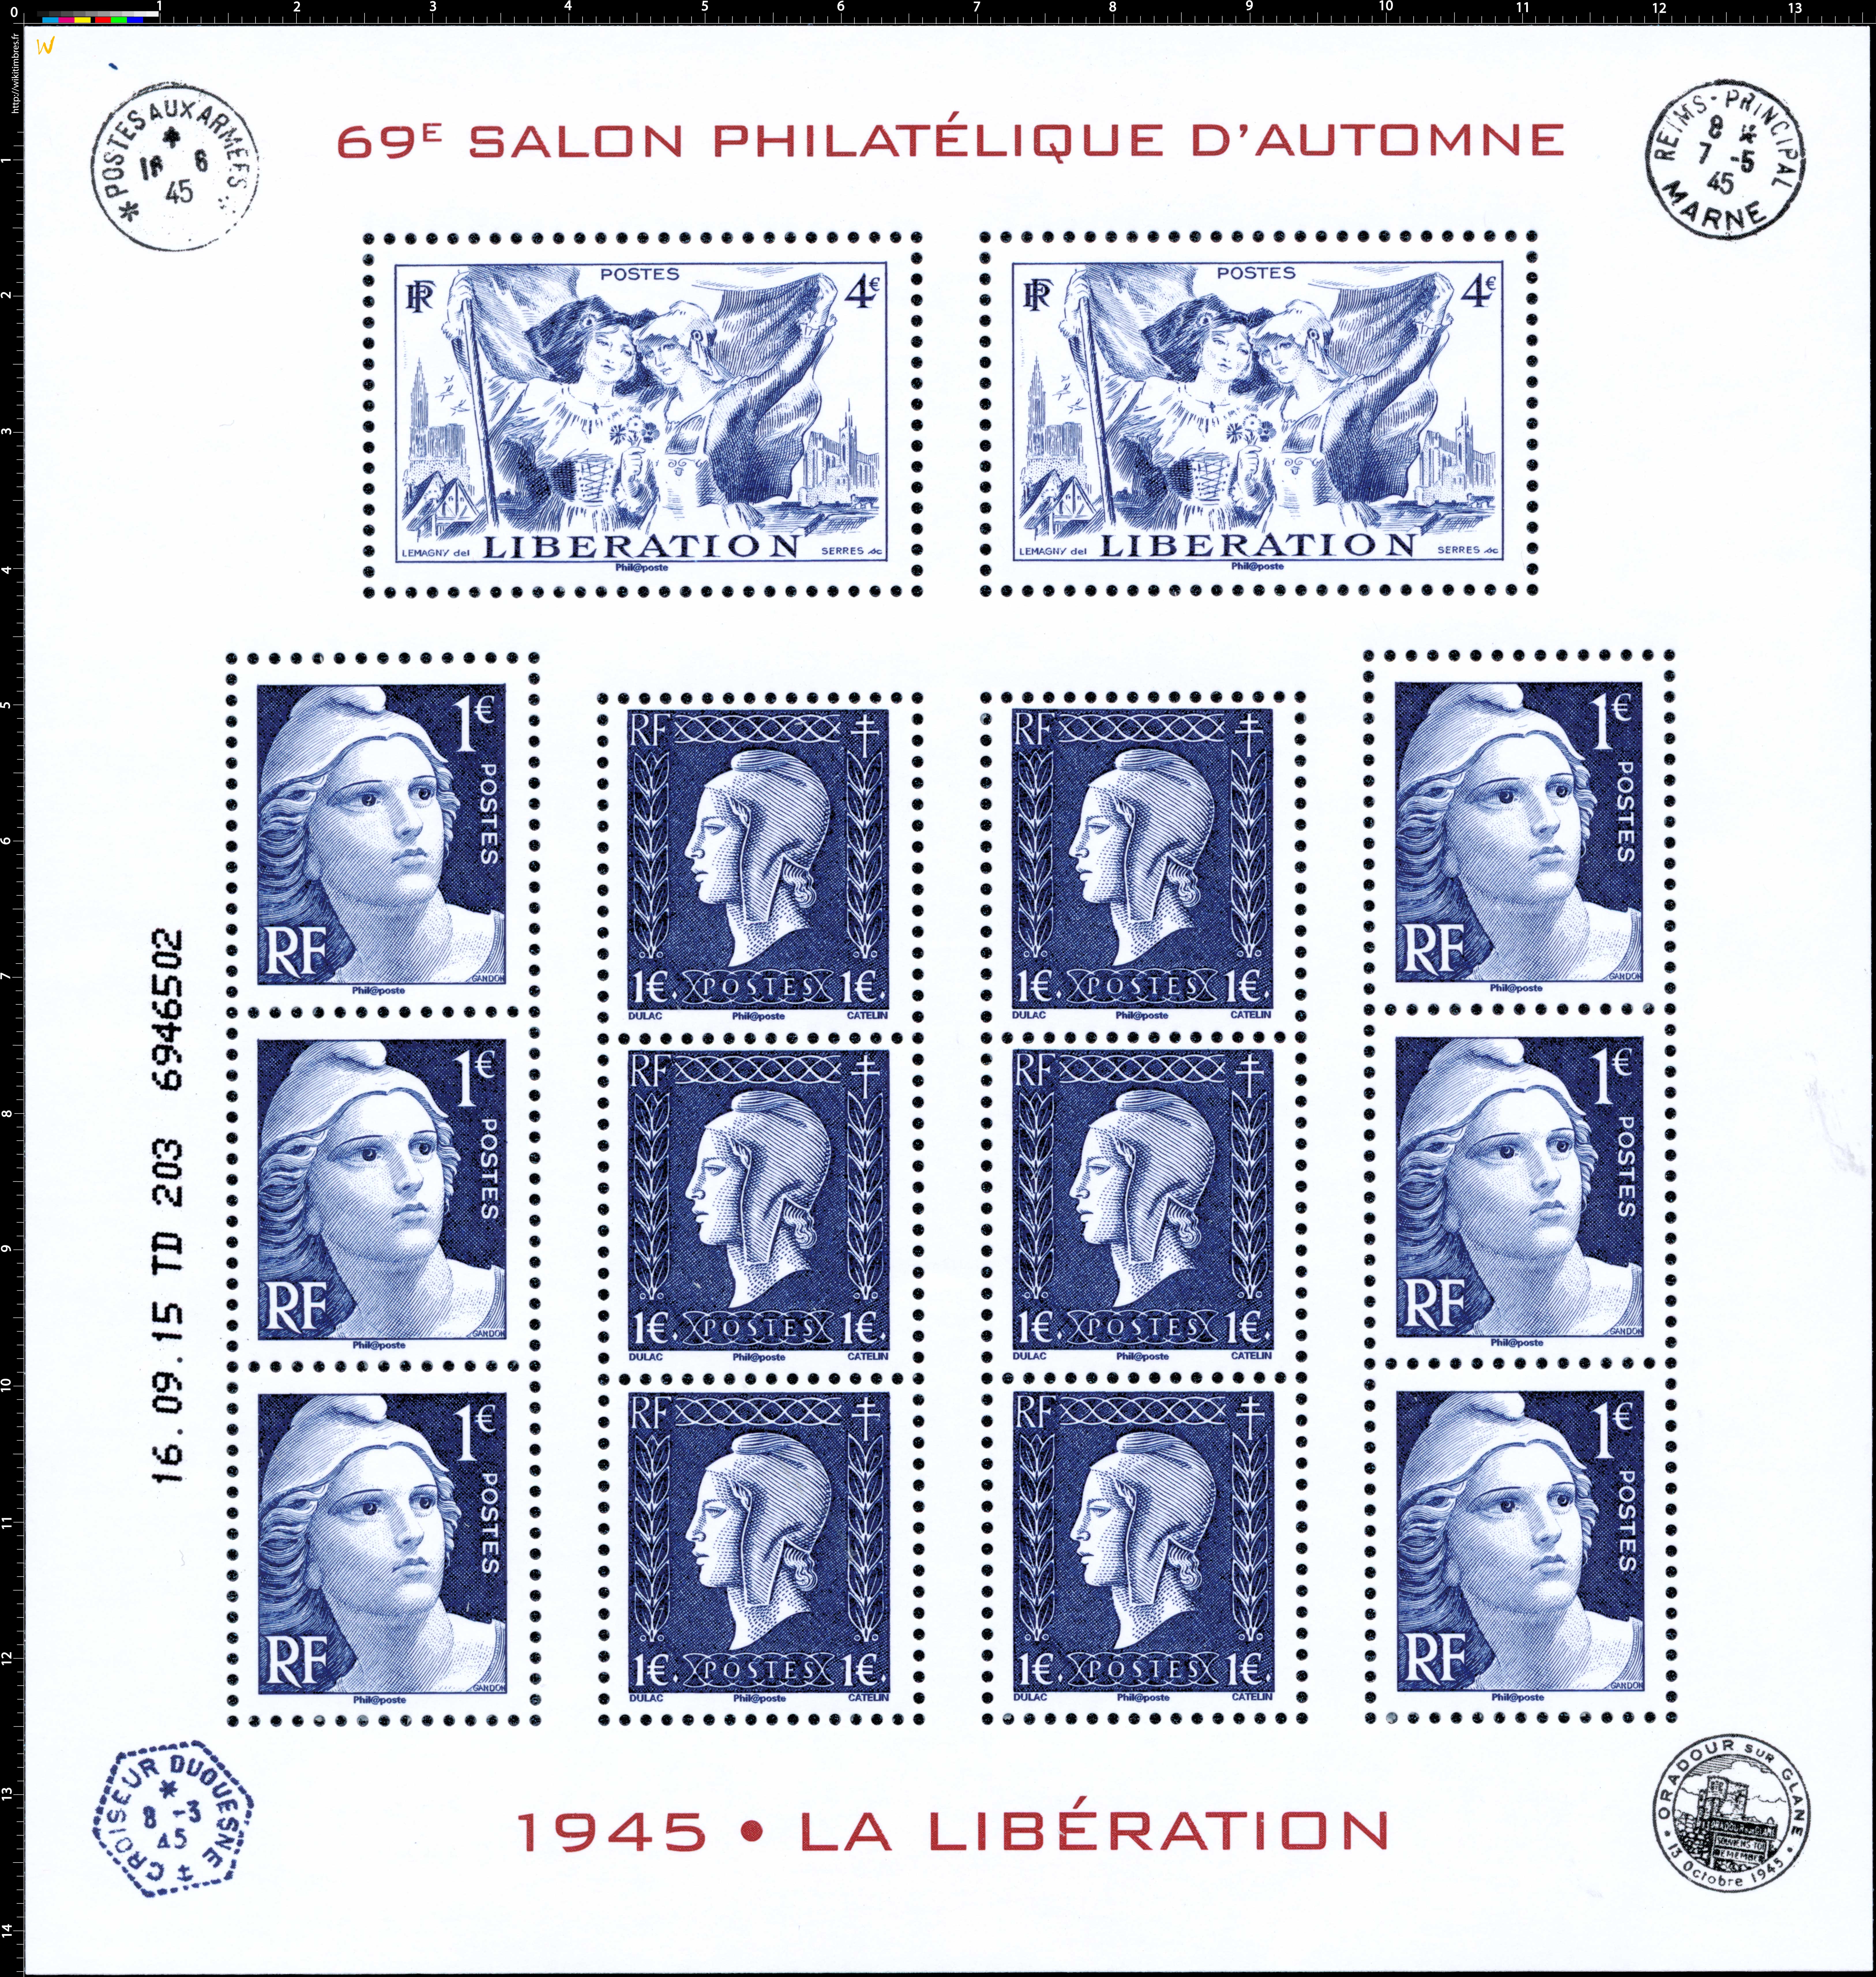 1945 la Libération - 69e Salon philatélique d'automne 2015